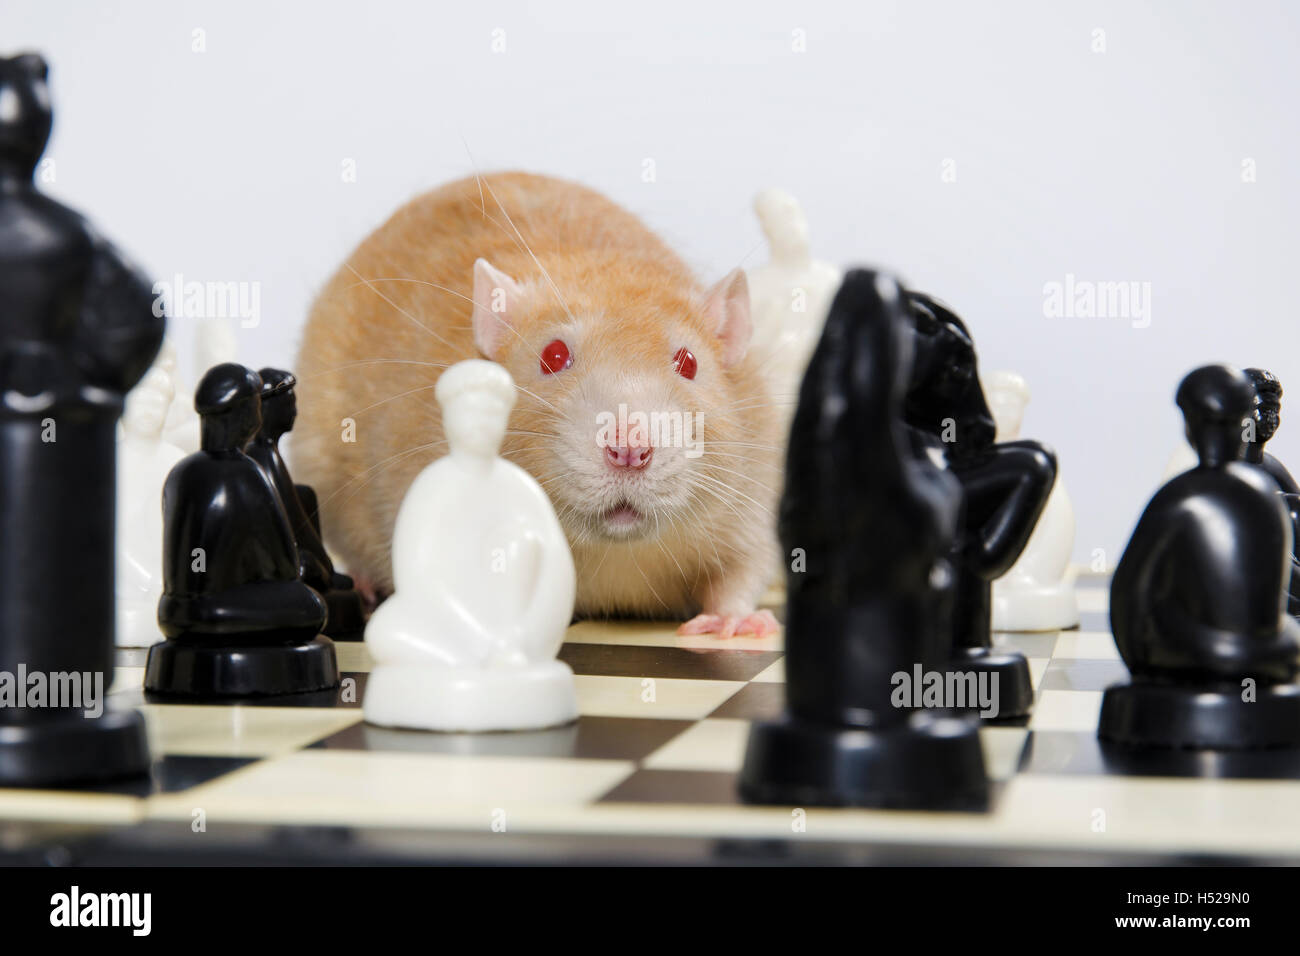 Drôle et intelligente de décoration animaux rat jouer aux échecs. Banque D'Images